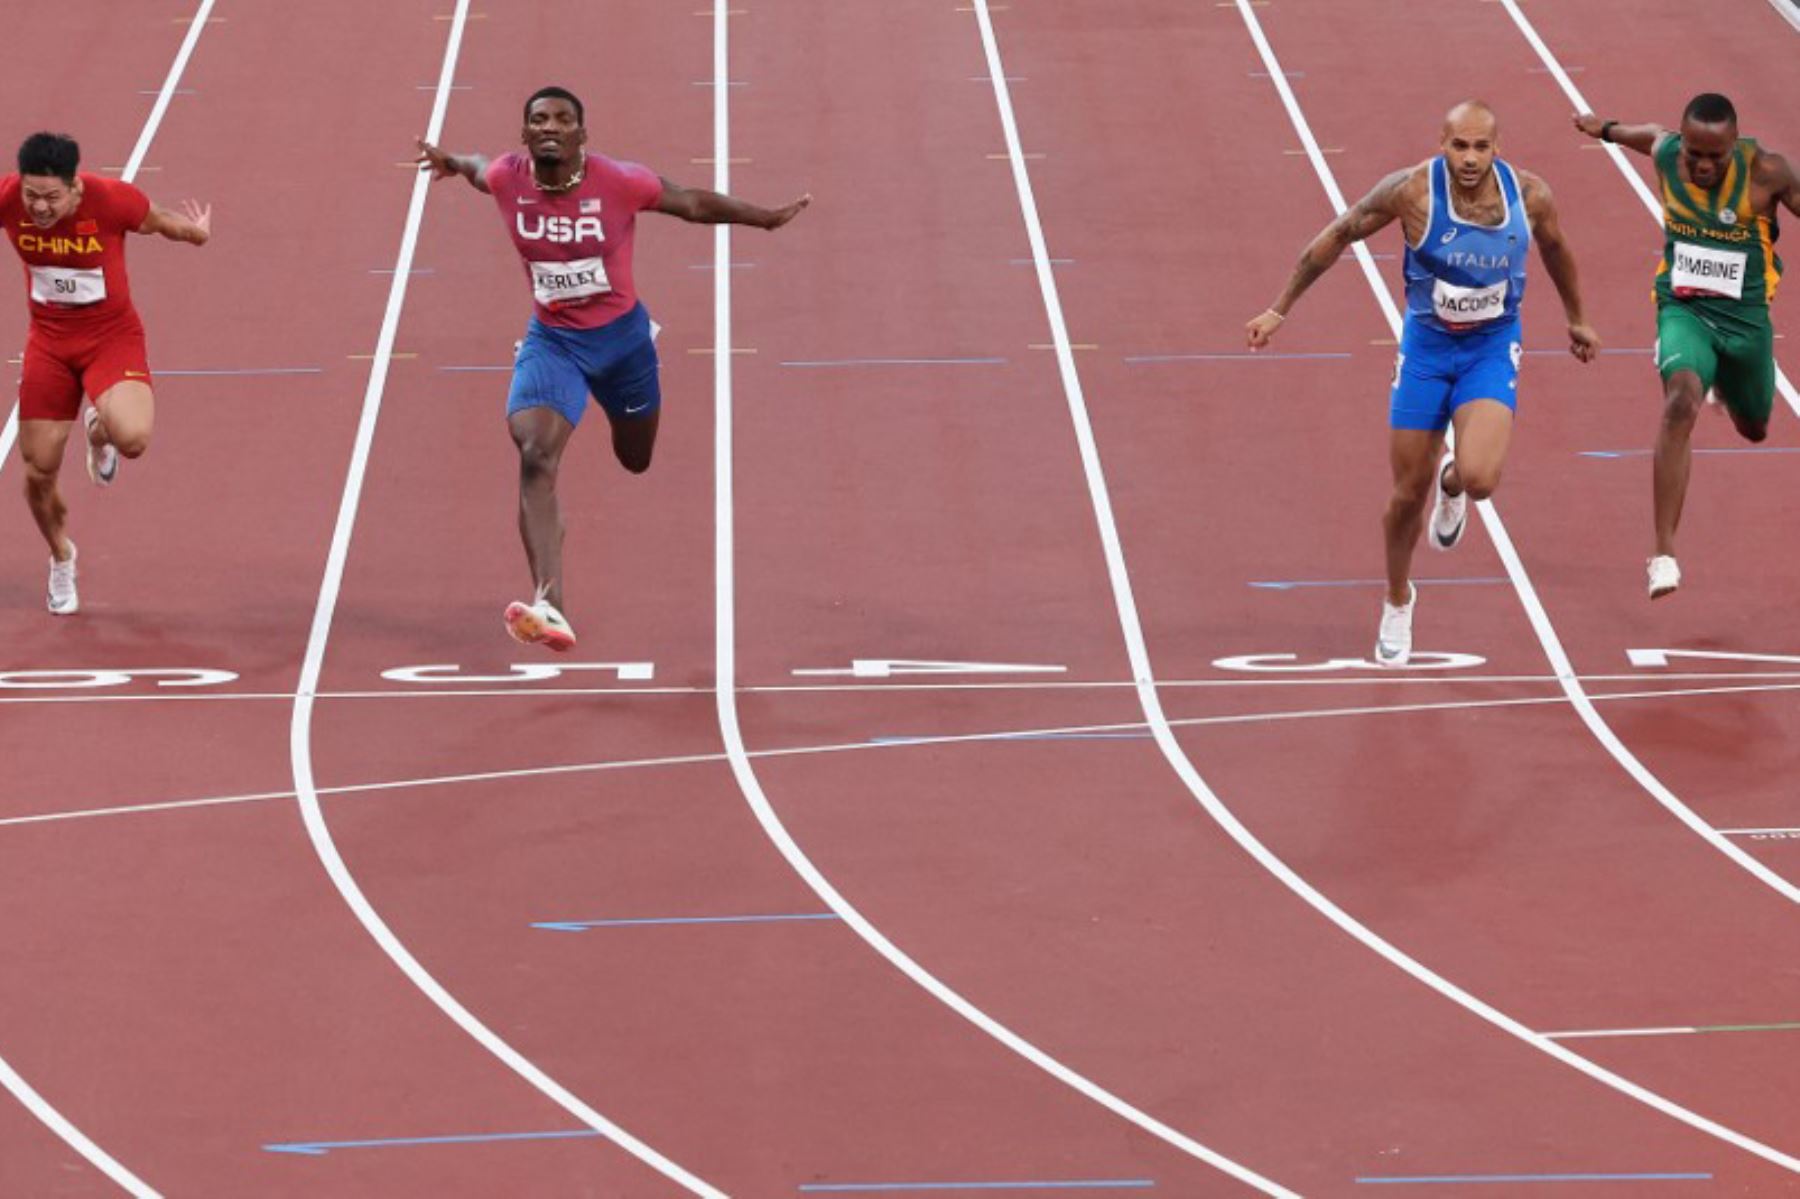 El italiano Lamont Marcell Jacobs (2nd R) cruza la línea de meta para ganar el oro por delante de (R) Akani Simbine de Sudáfrica, Fred Kerley de EE. UU. En segundo lugar, Su Bingtian de China y Ronnie Baker de EE. UU. Durante la final masculina de 100 metros durante los Juegos Olímpicos de Tokio.

Foto: AFP